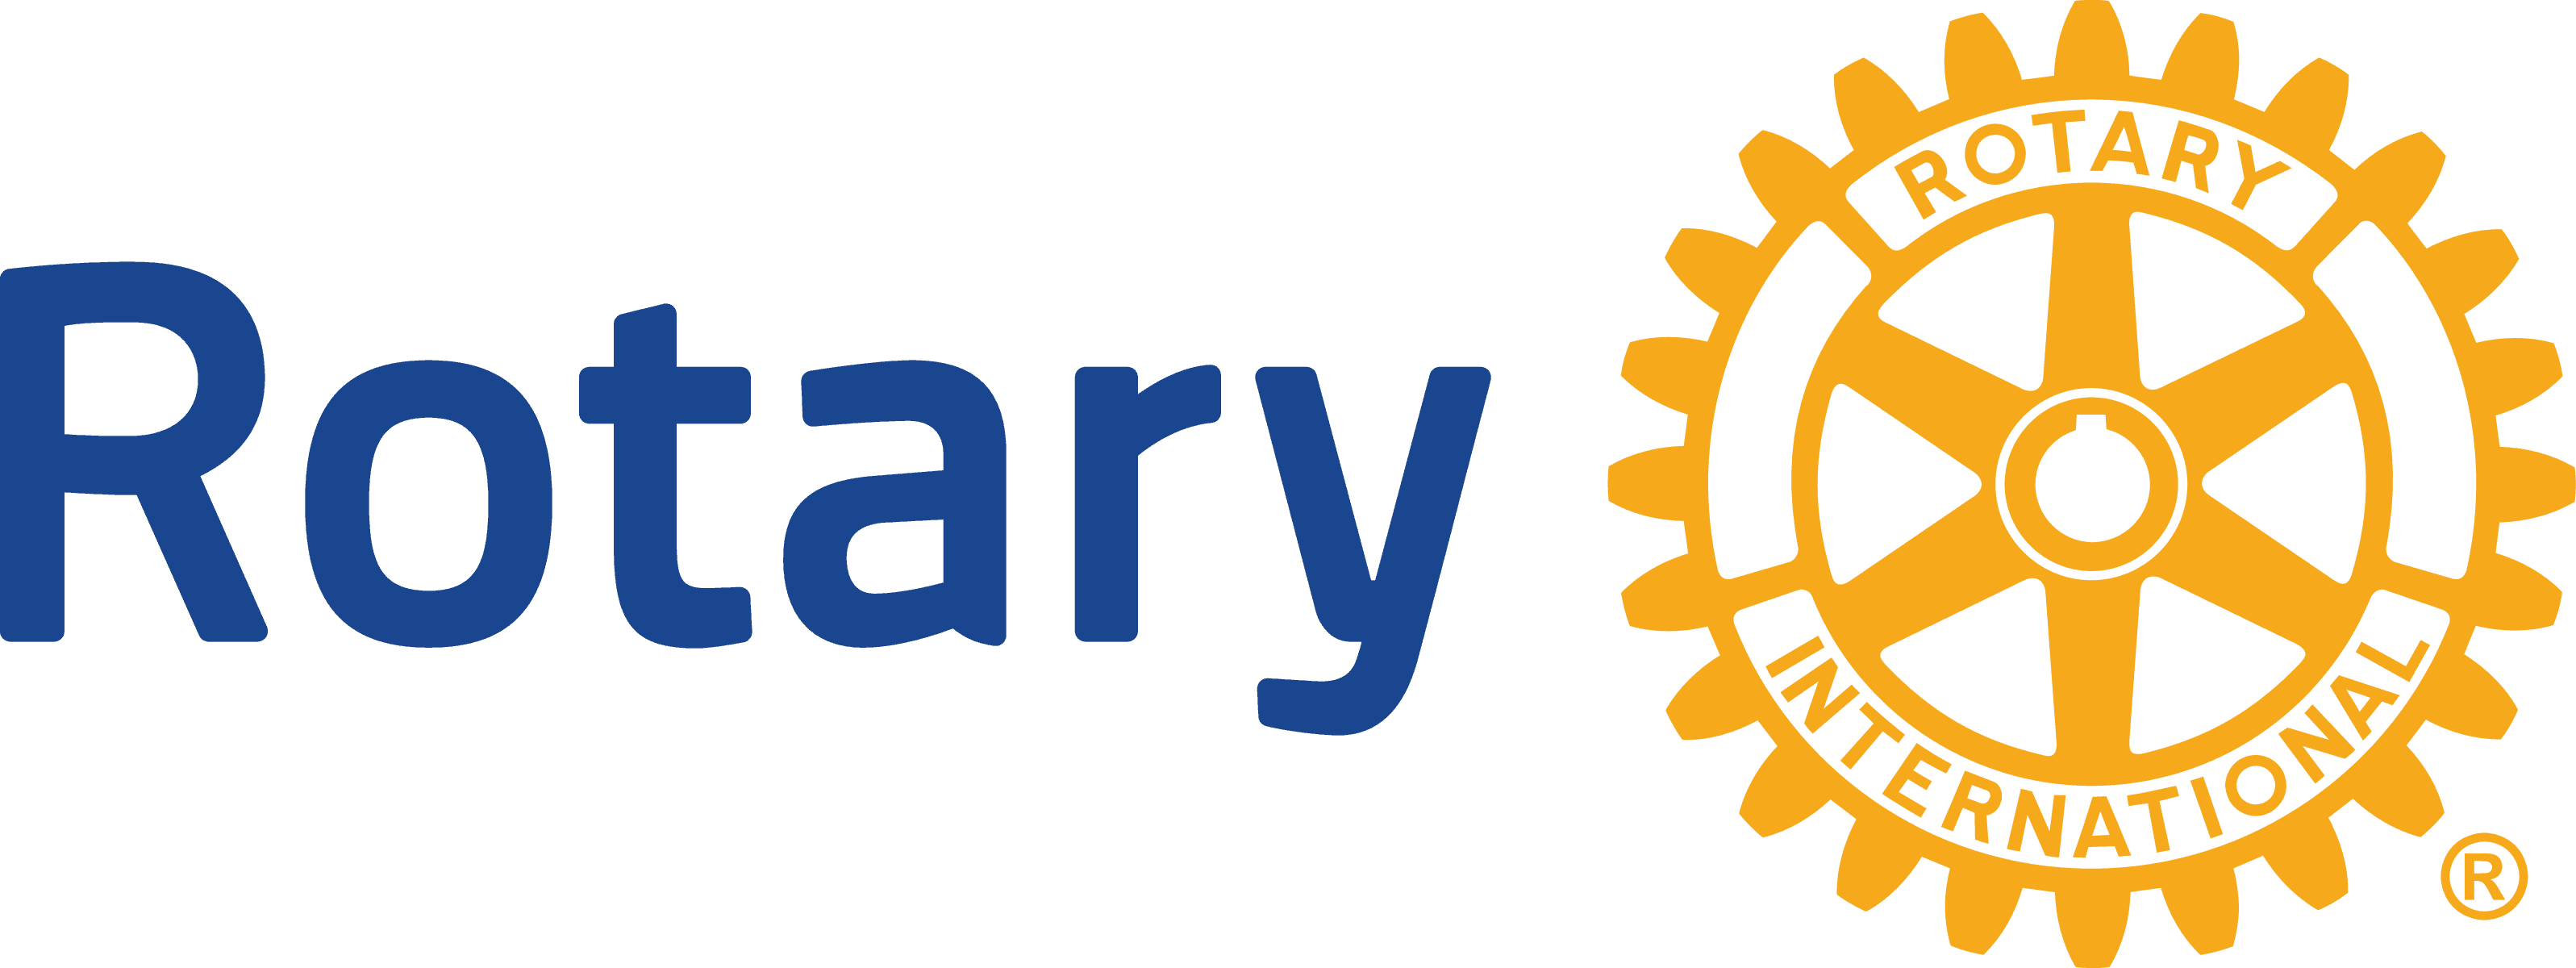 Rotary's logo